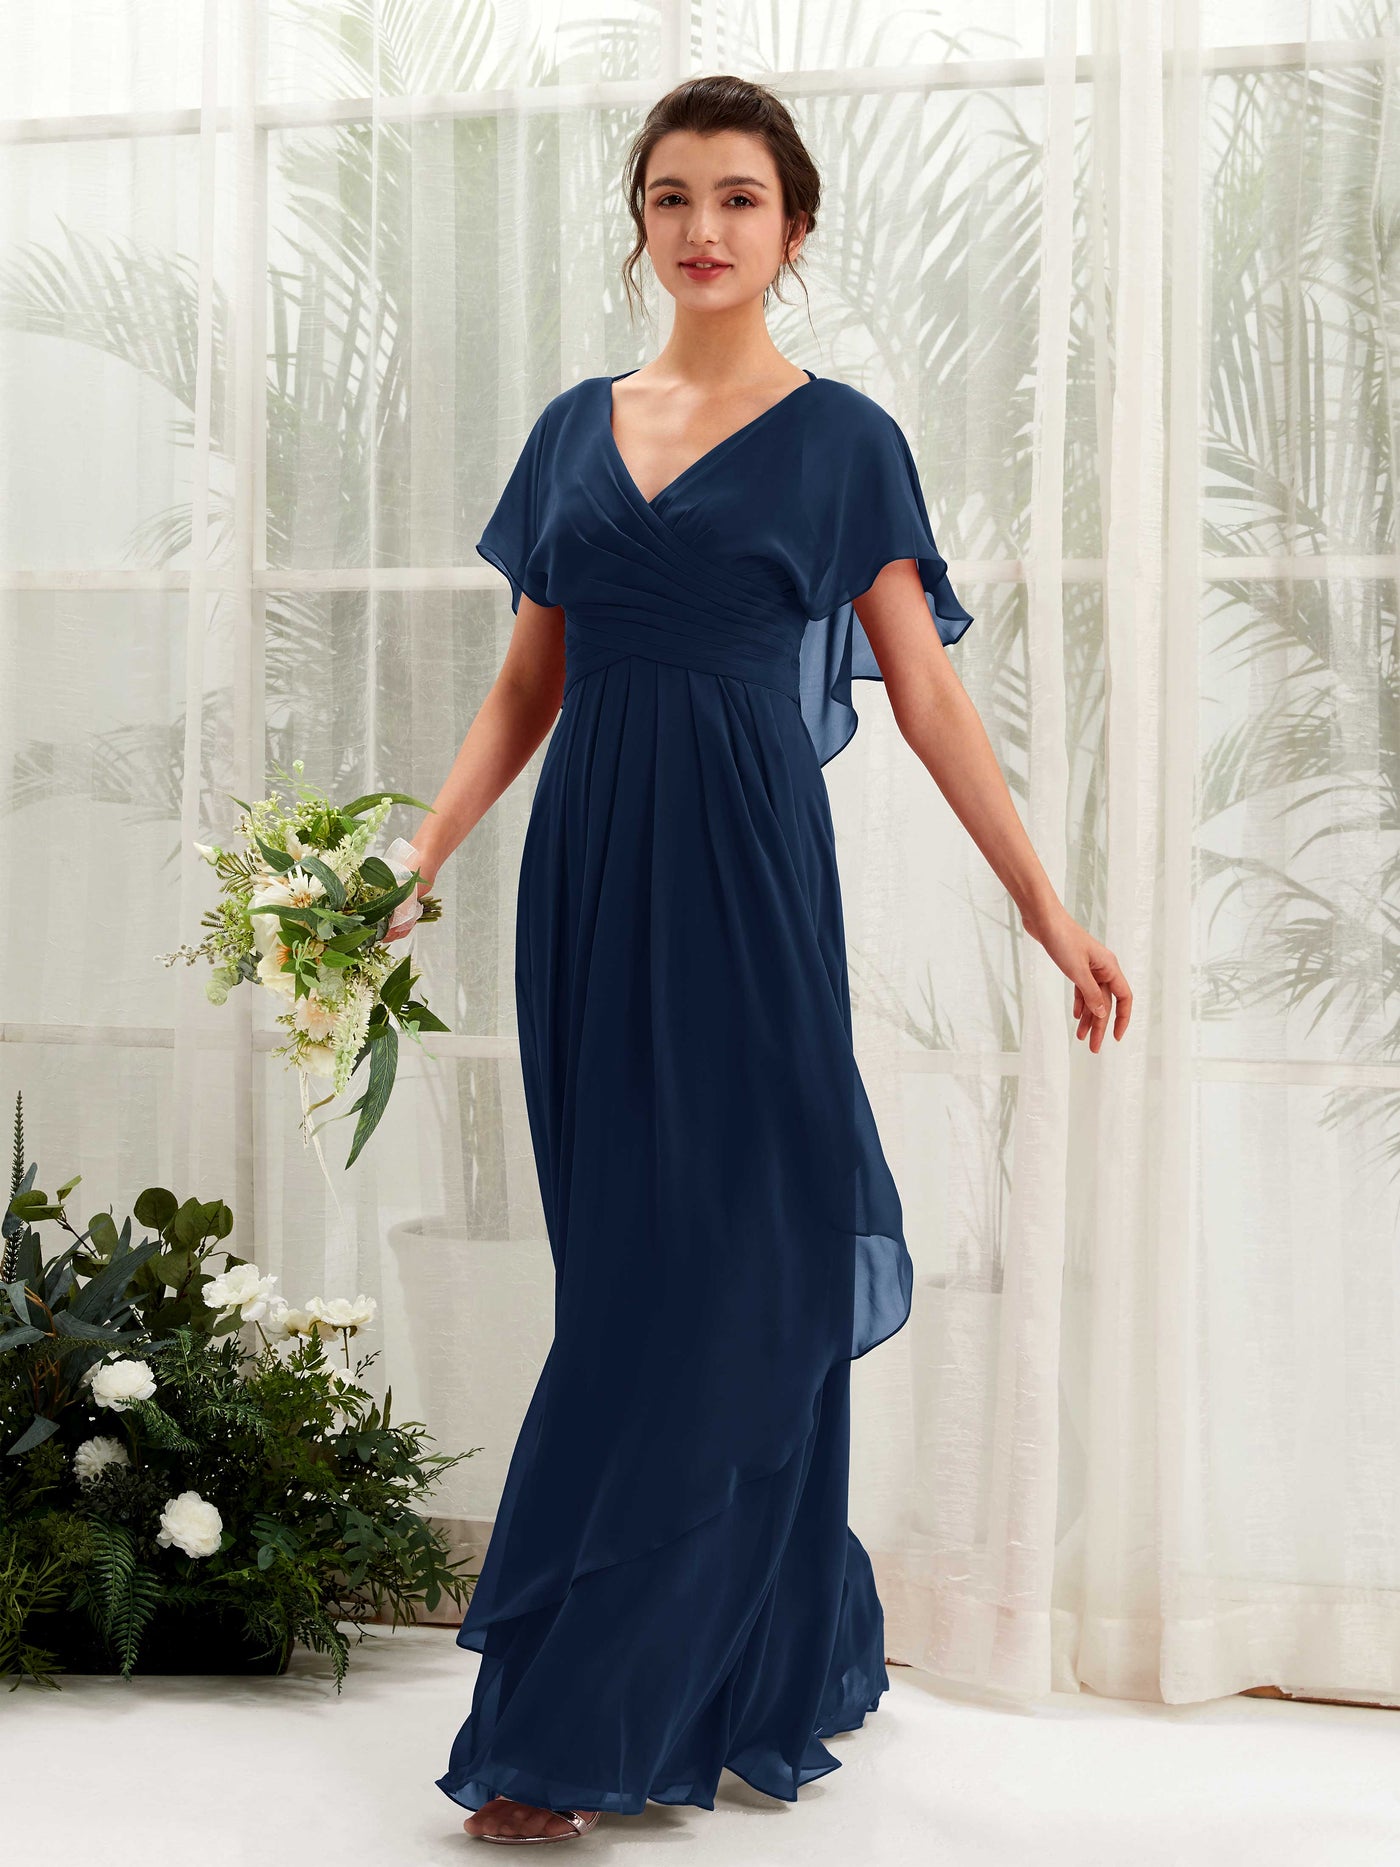 V-neck Short Sleeves Chiffon Bridesmaid Dress  (81226113)#color_navy